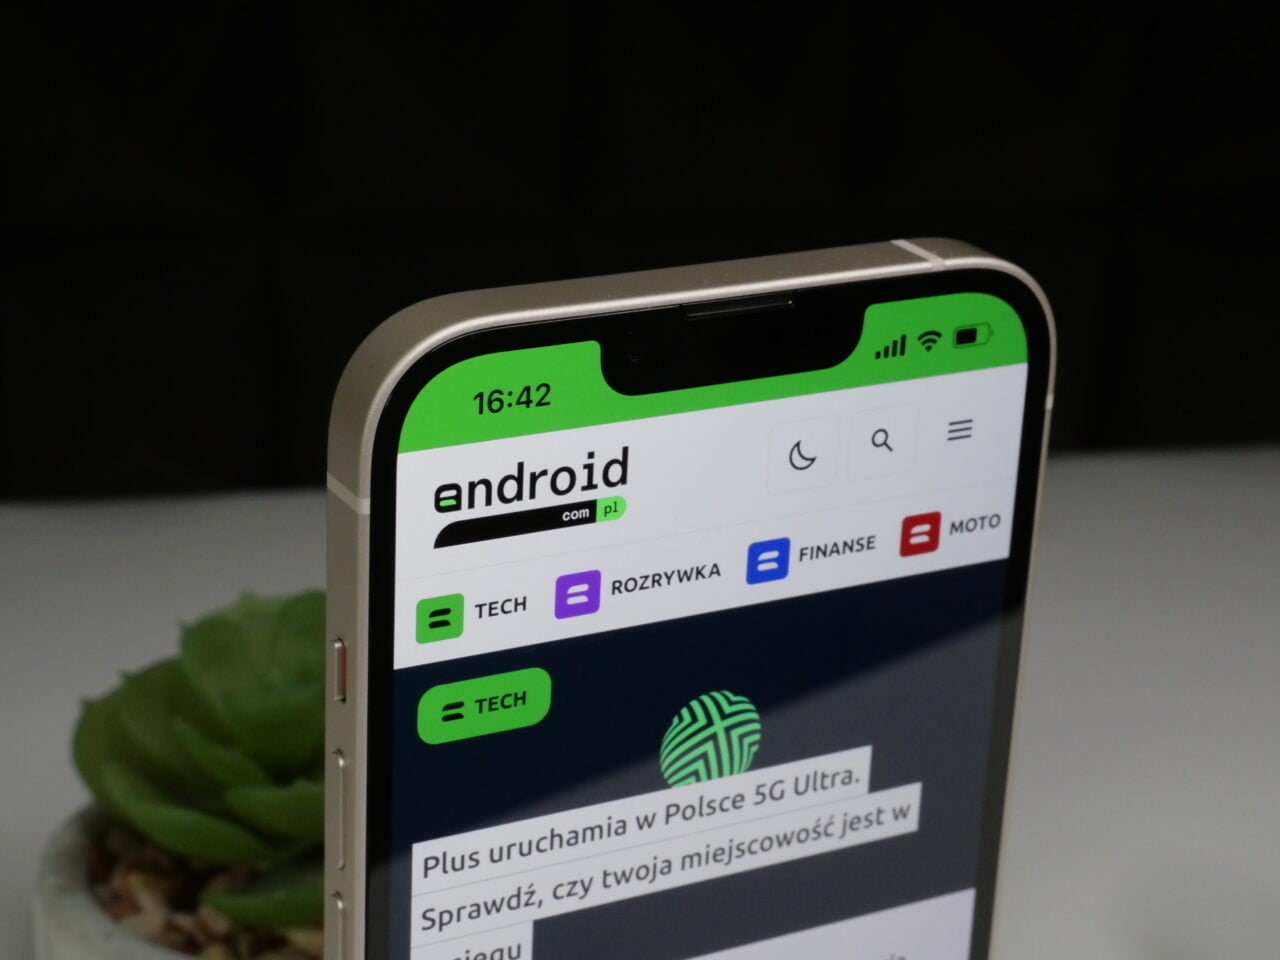 Smartfon wyświetlający stronę internetową z logo "android" i polskimi kategoriami: TECH, ROZRYWKA, FINANSE, MOTO, na tle ciemnym z rośliną w niewyraźnym tle.